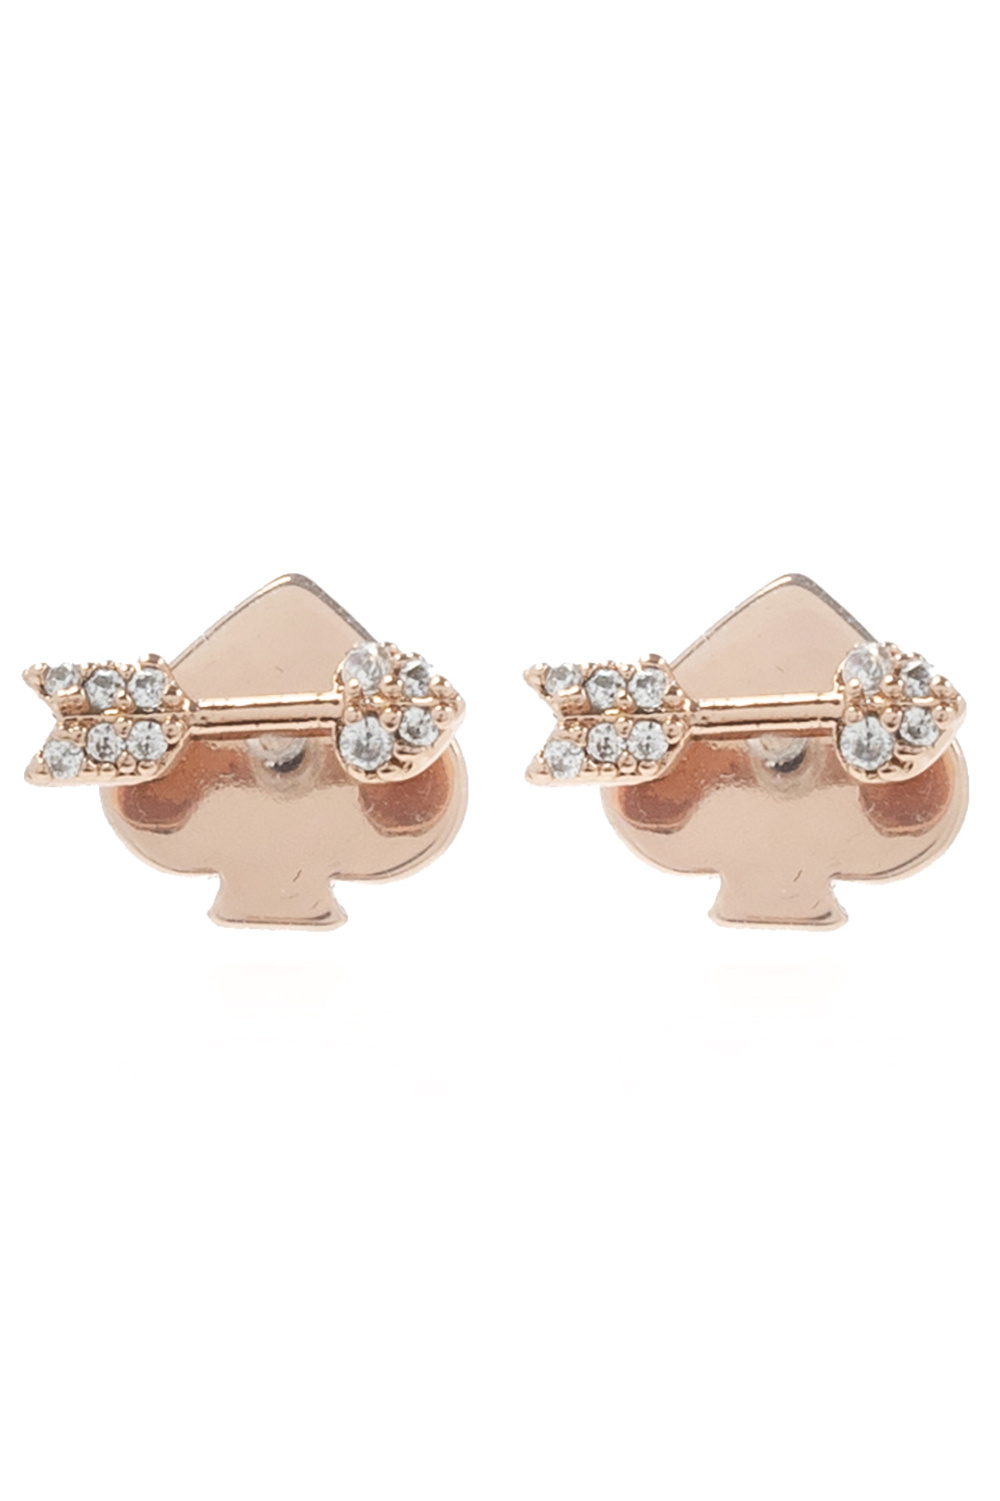 Kate Spade ‘Spell It Out’ earrings set